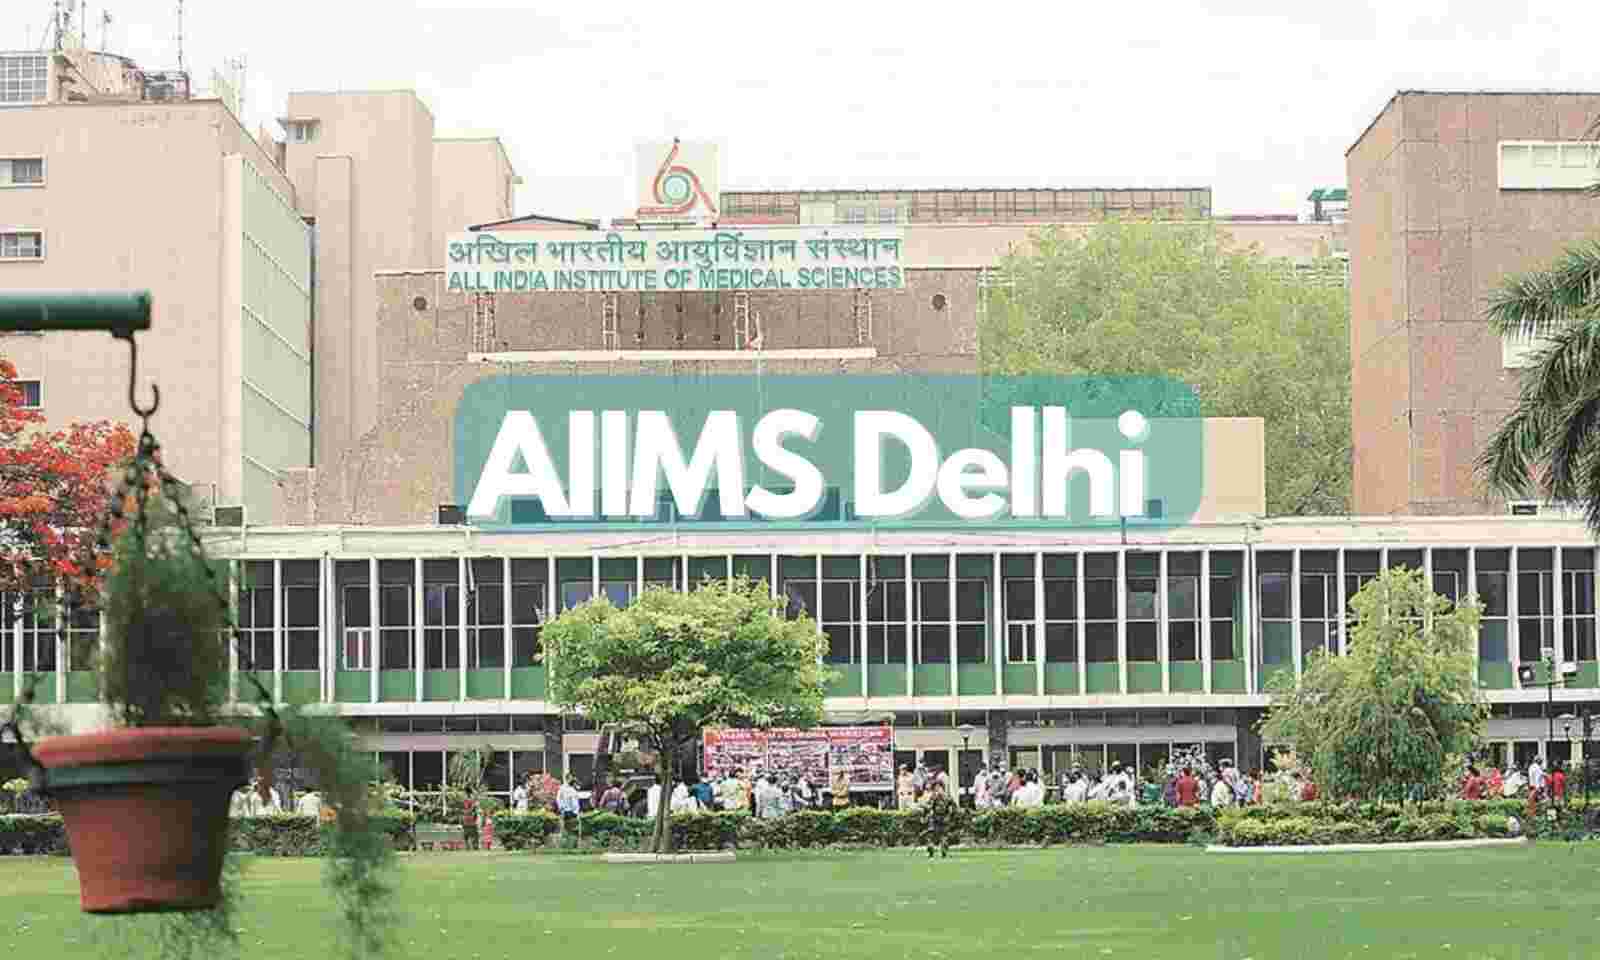 Aiims Delhi Wallpapers - Top Free Aiims Delhi Backgrounds - WallpaperAccess